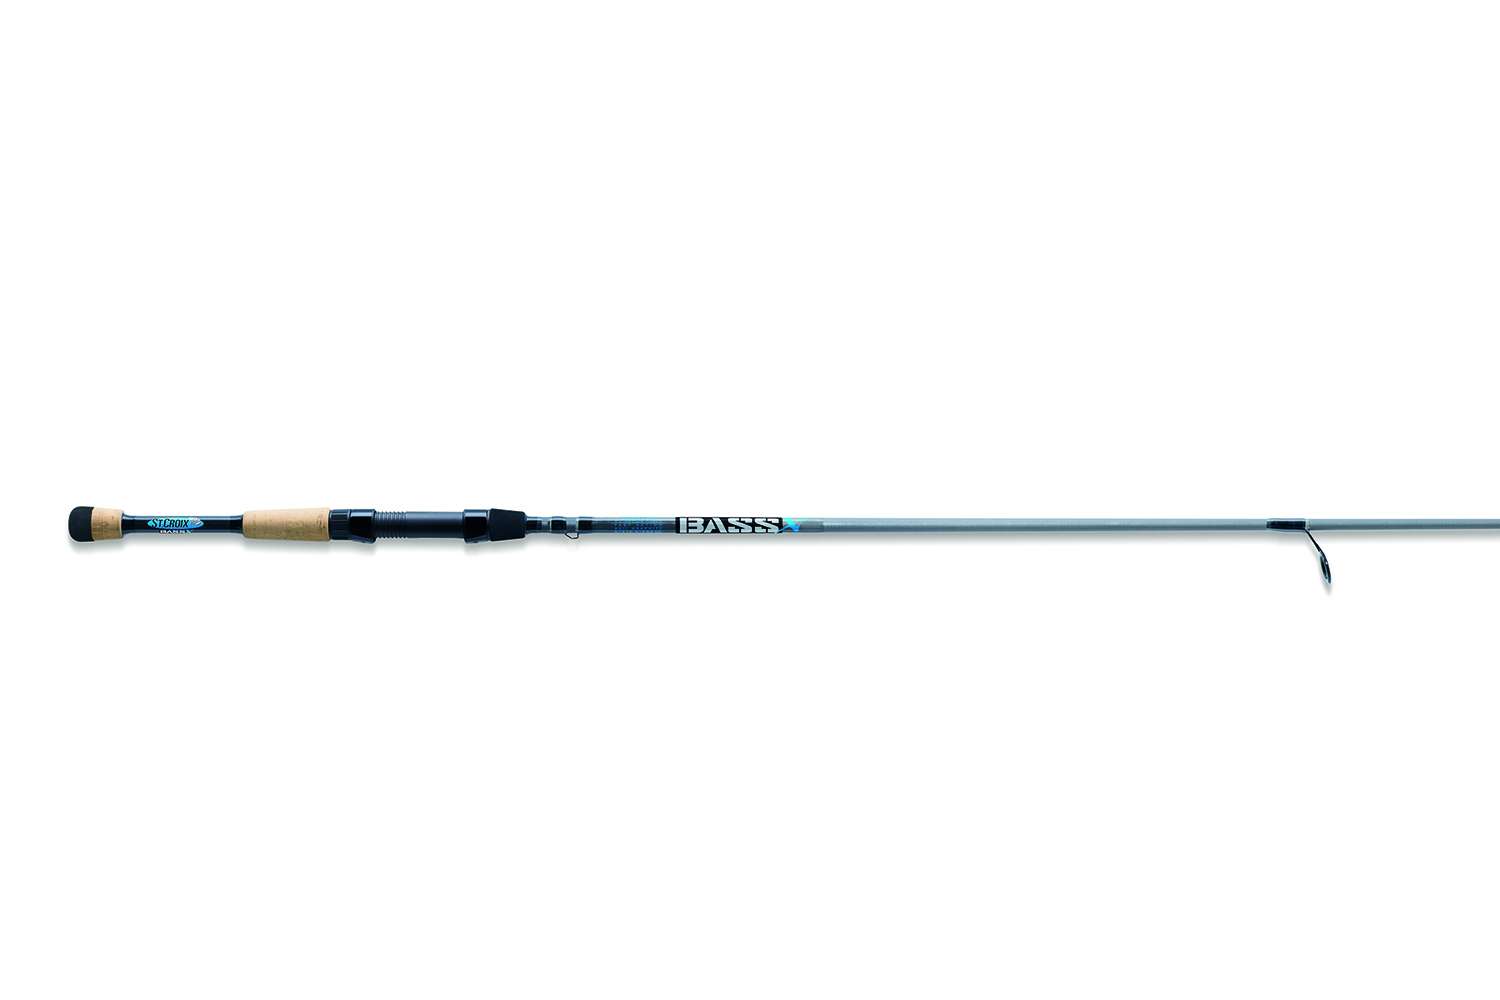 St. Croix Bass X spinning rod, $100